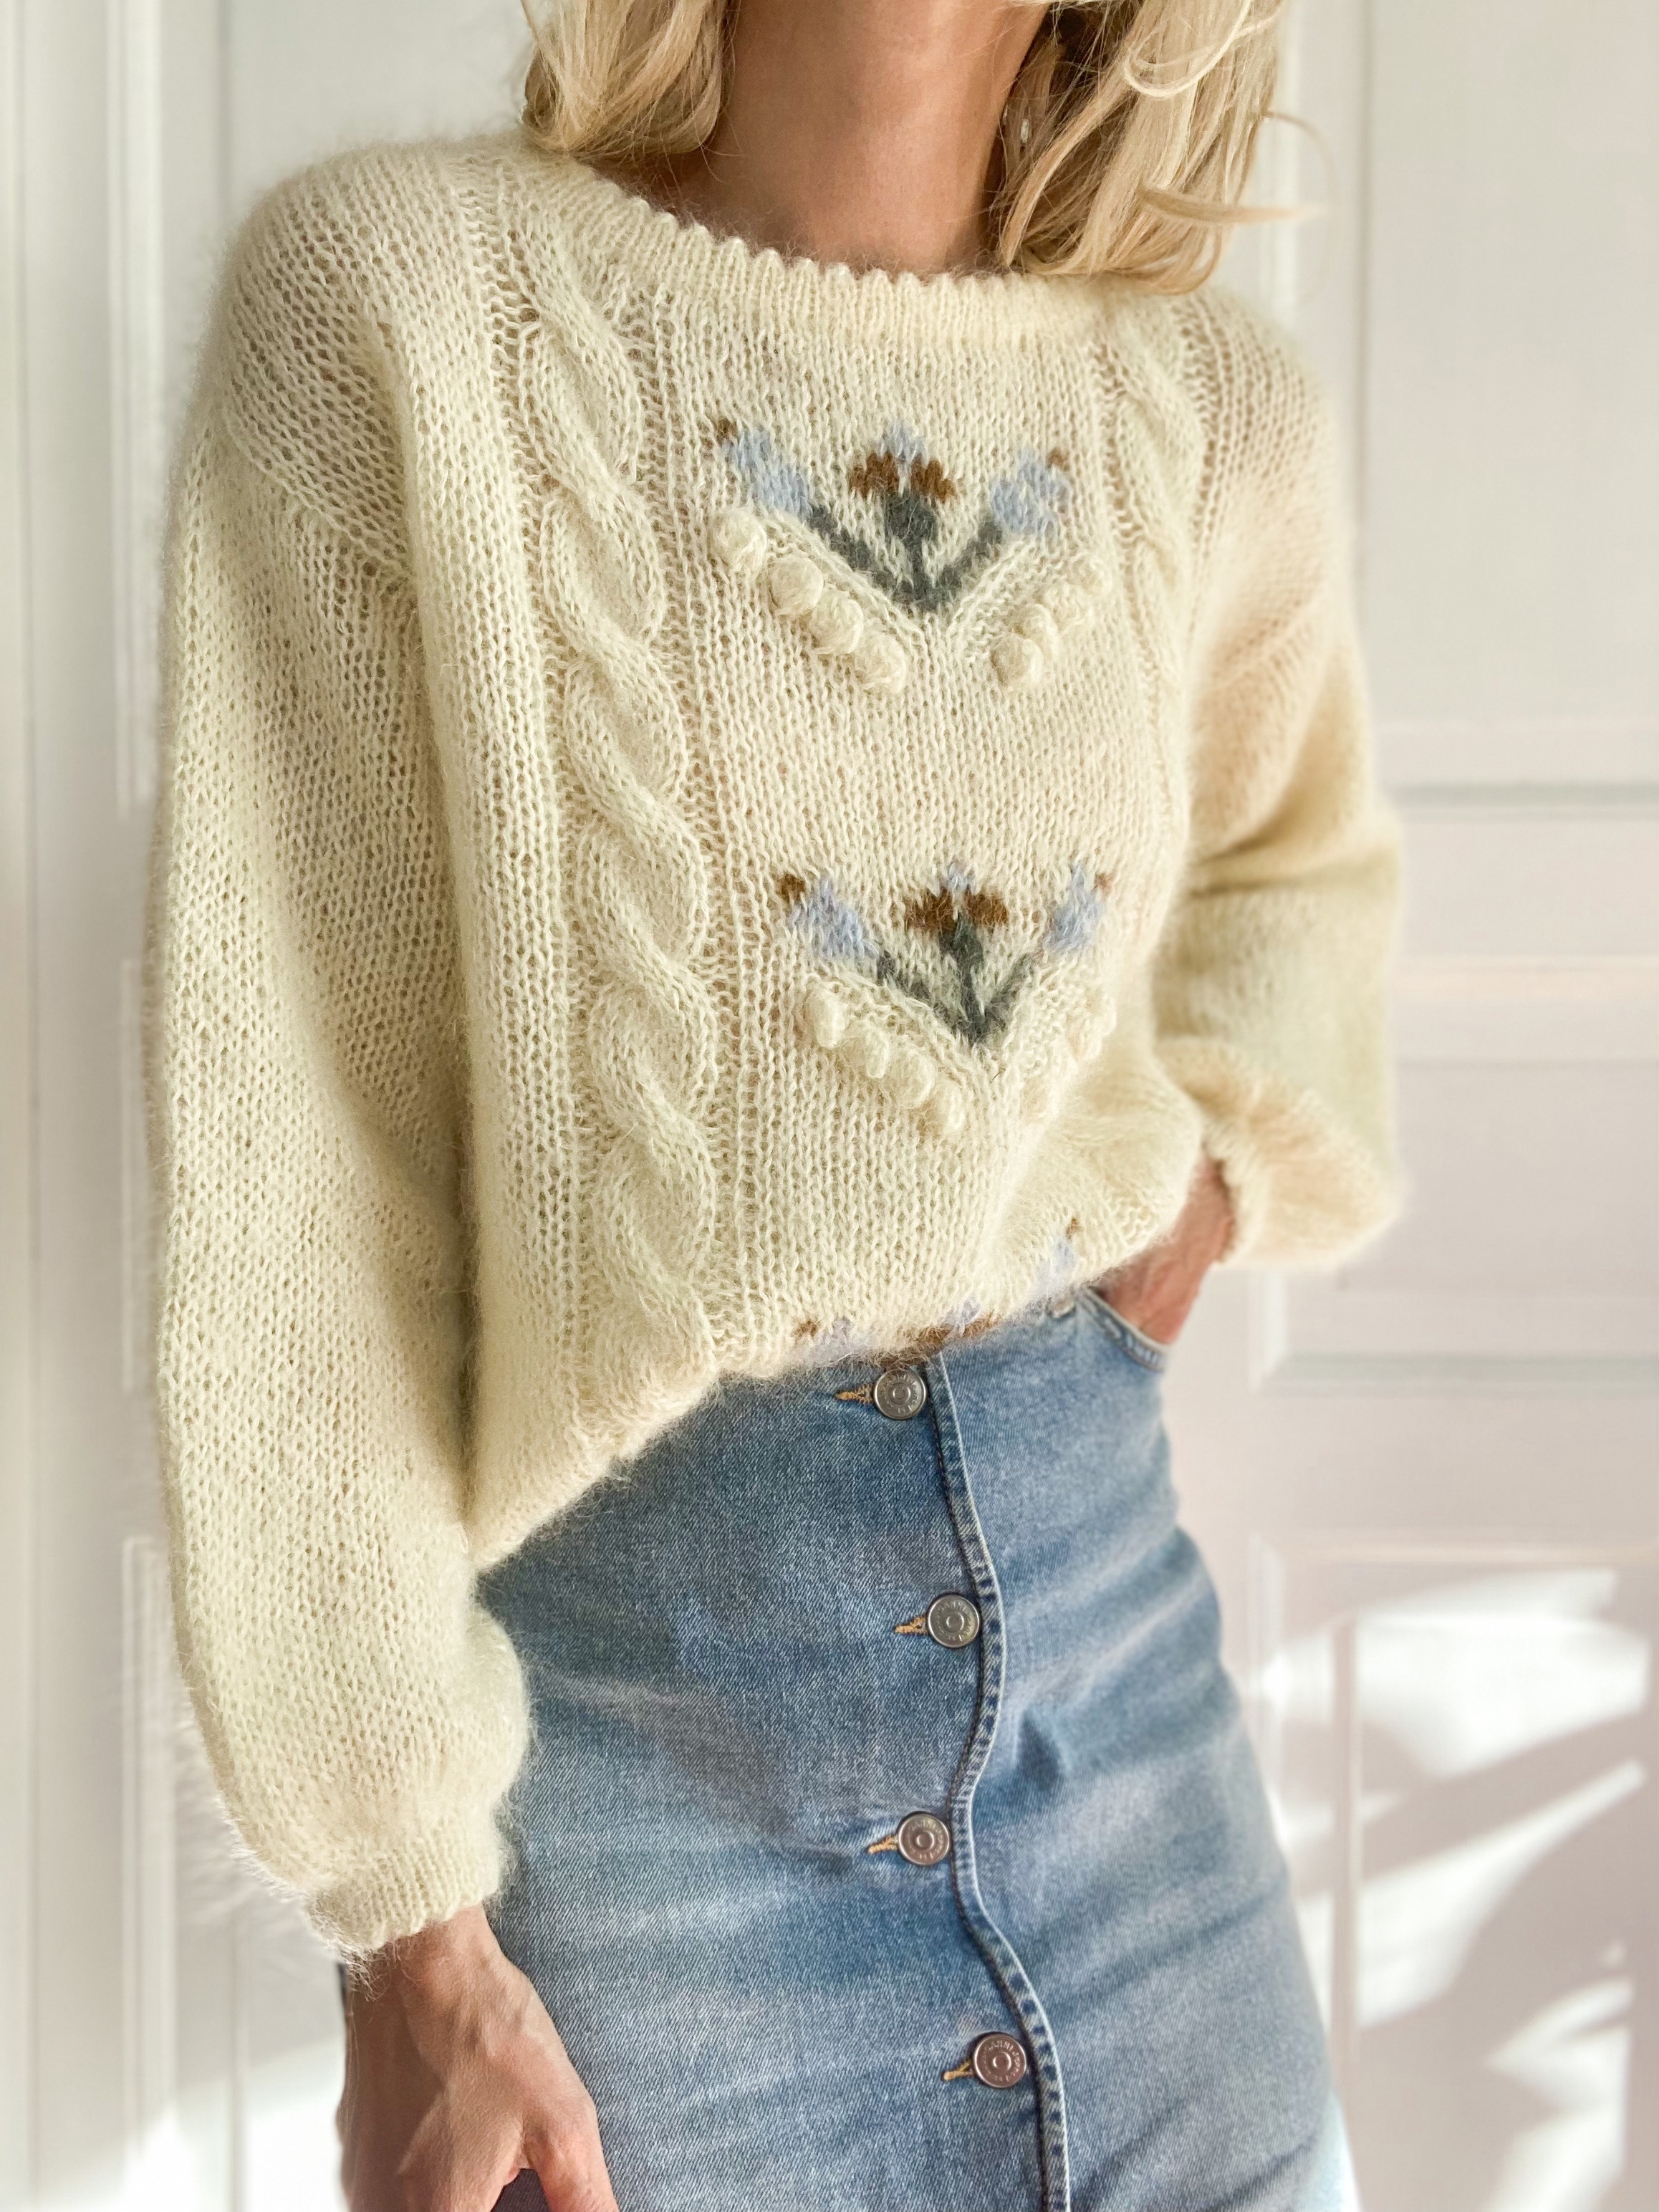 Retro Tulip Sweater